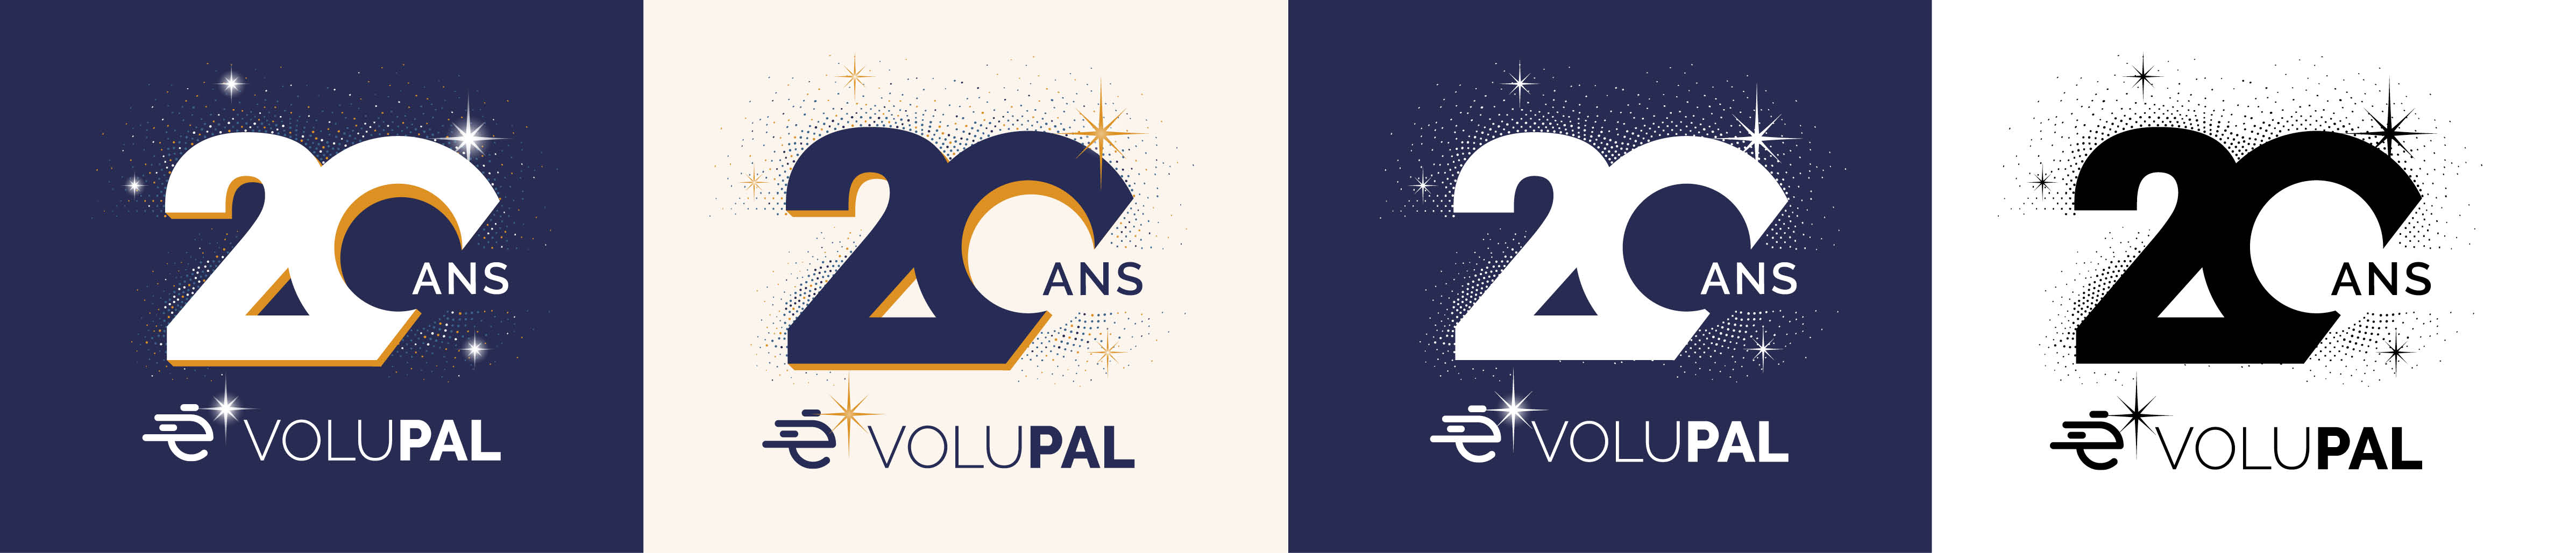 VOLUPAL 20 ANS PALETTE PAILLETTES logo des 20 ans